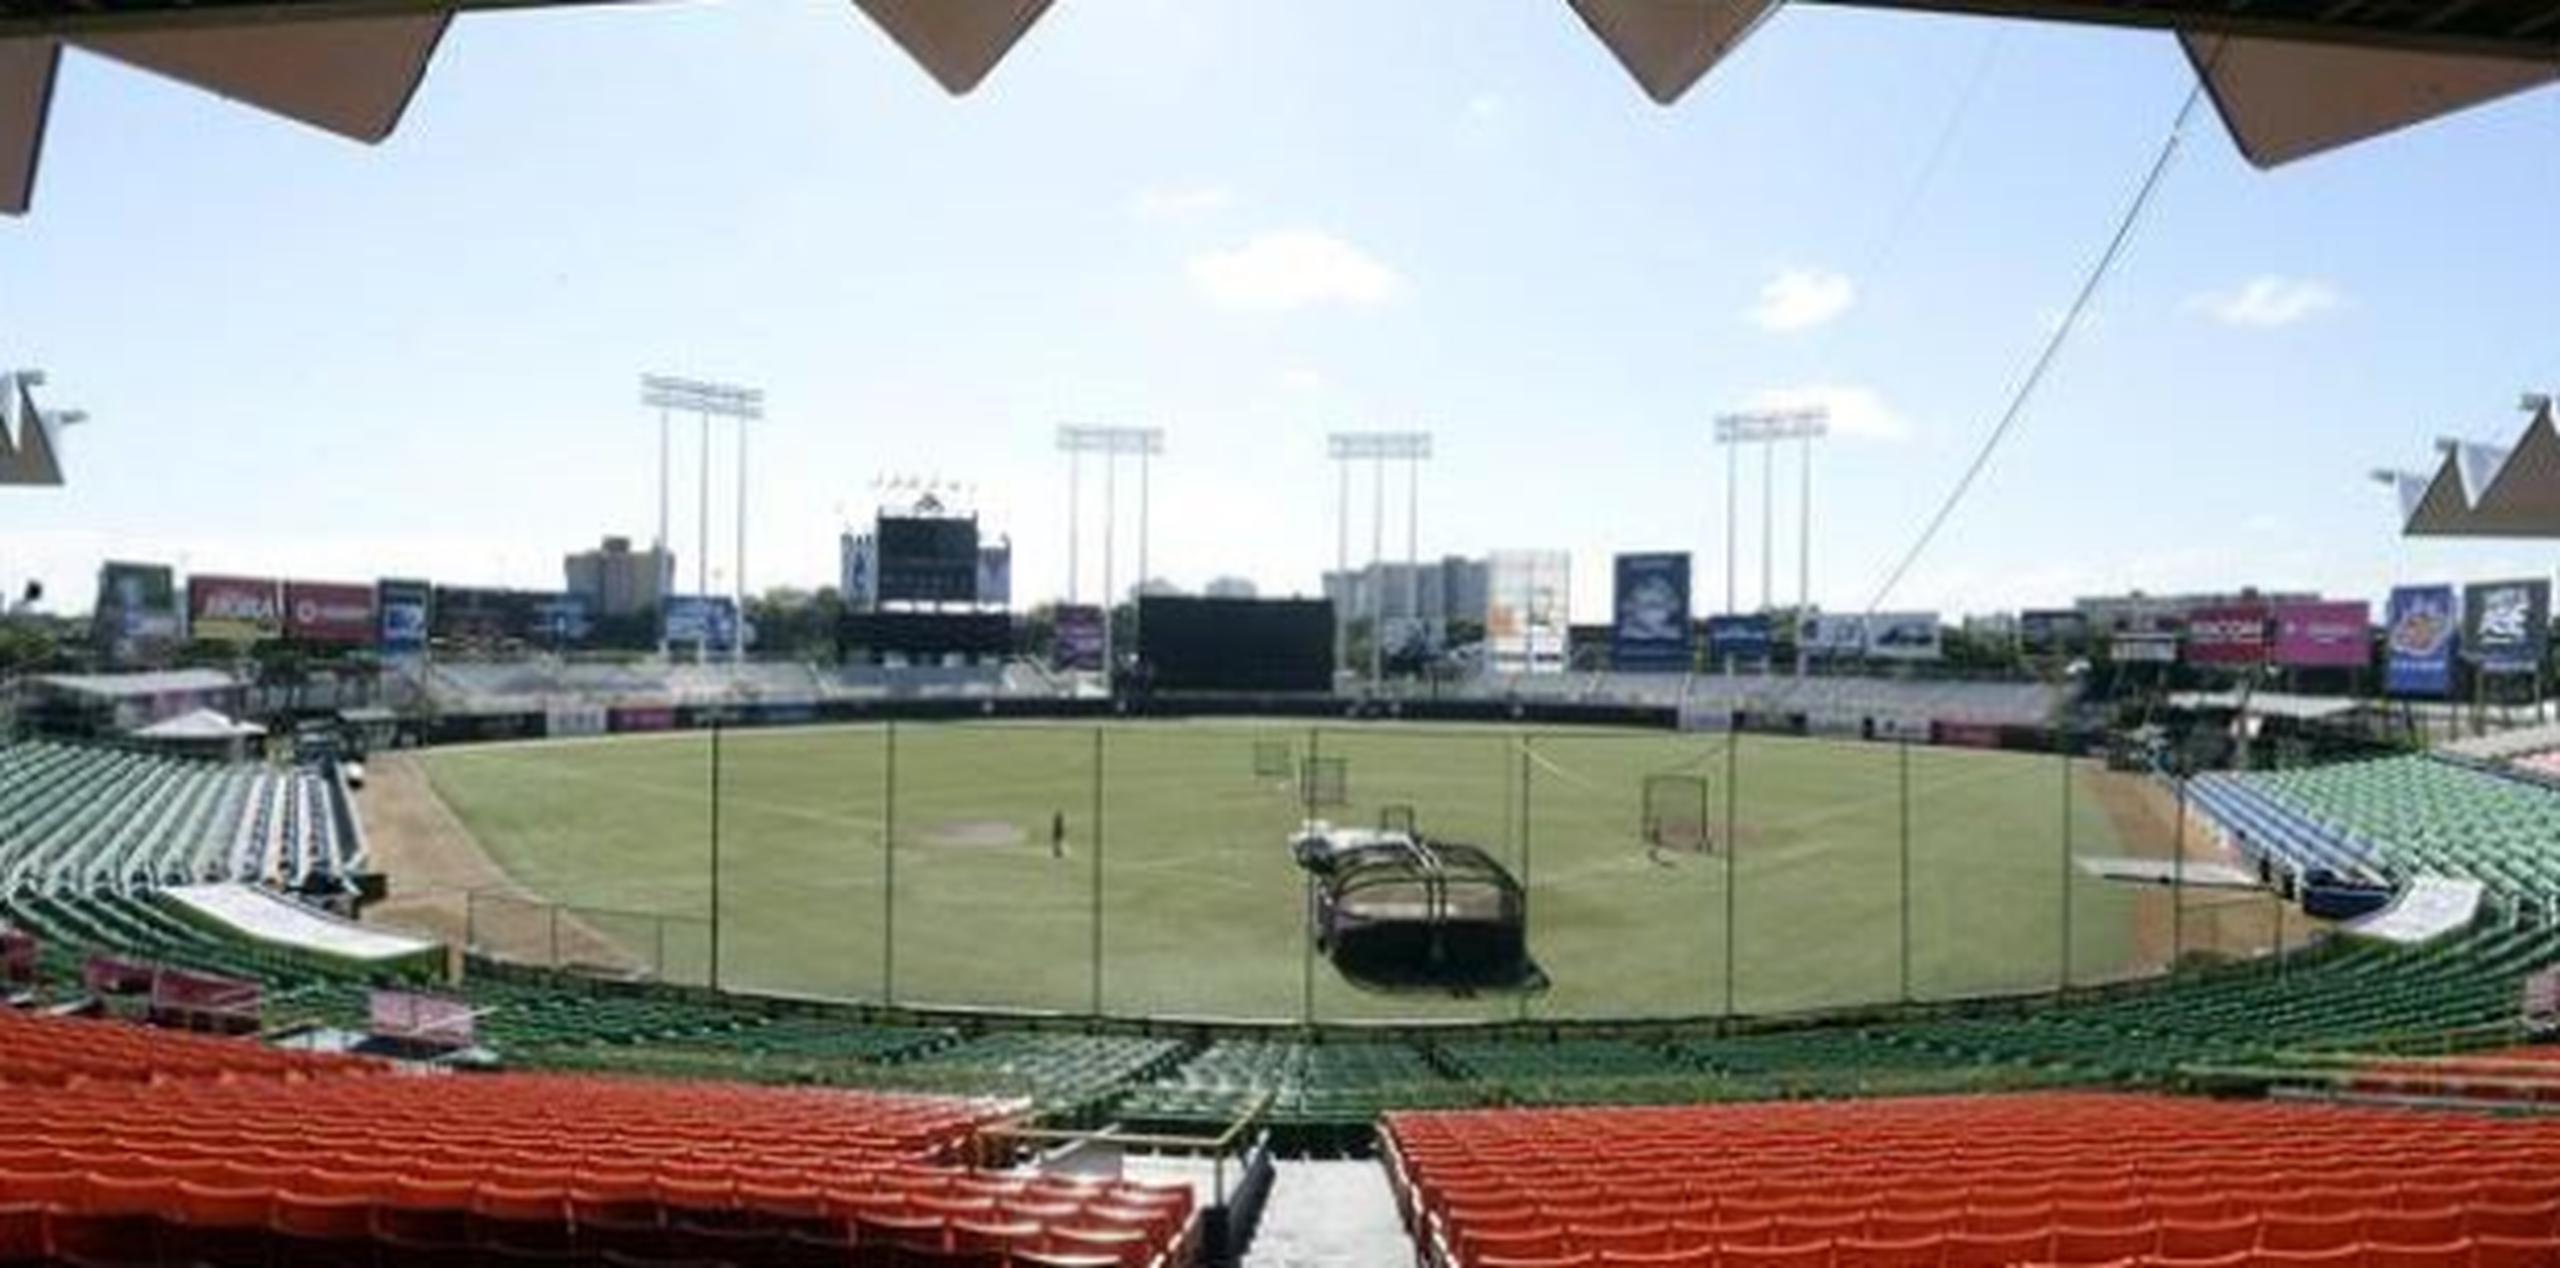 La solicitud mediante carta de las Ligas Mayores de utilizar el estadio municipal de San Juan coincide  con la fecha de los dos partidos cancelados entre los Piratas de Pittsburgh y los Marlins de Miami el 30 y 31 de mayo en el parque capitalino. (Archivo)